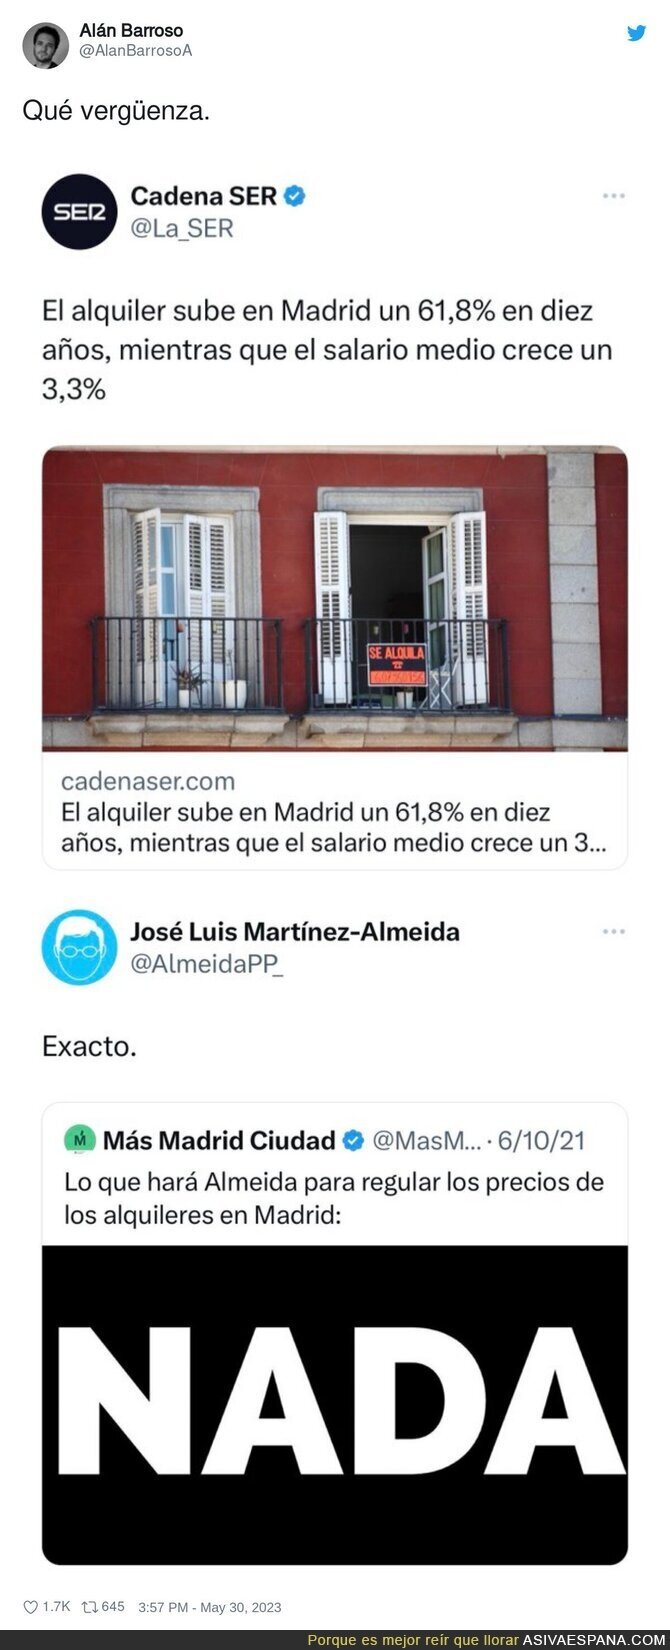 Disfruten lo votado con José Luis Martínez Almeida los que se quejan del precio de los alquileres